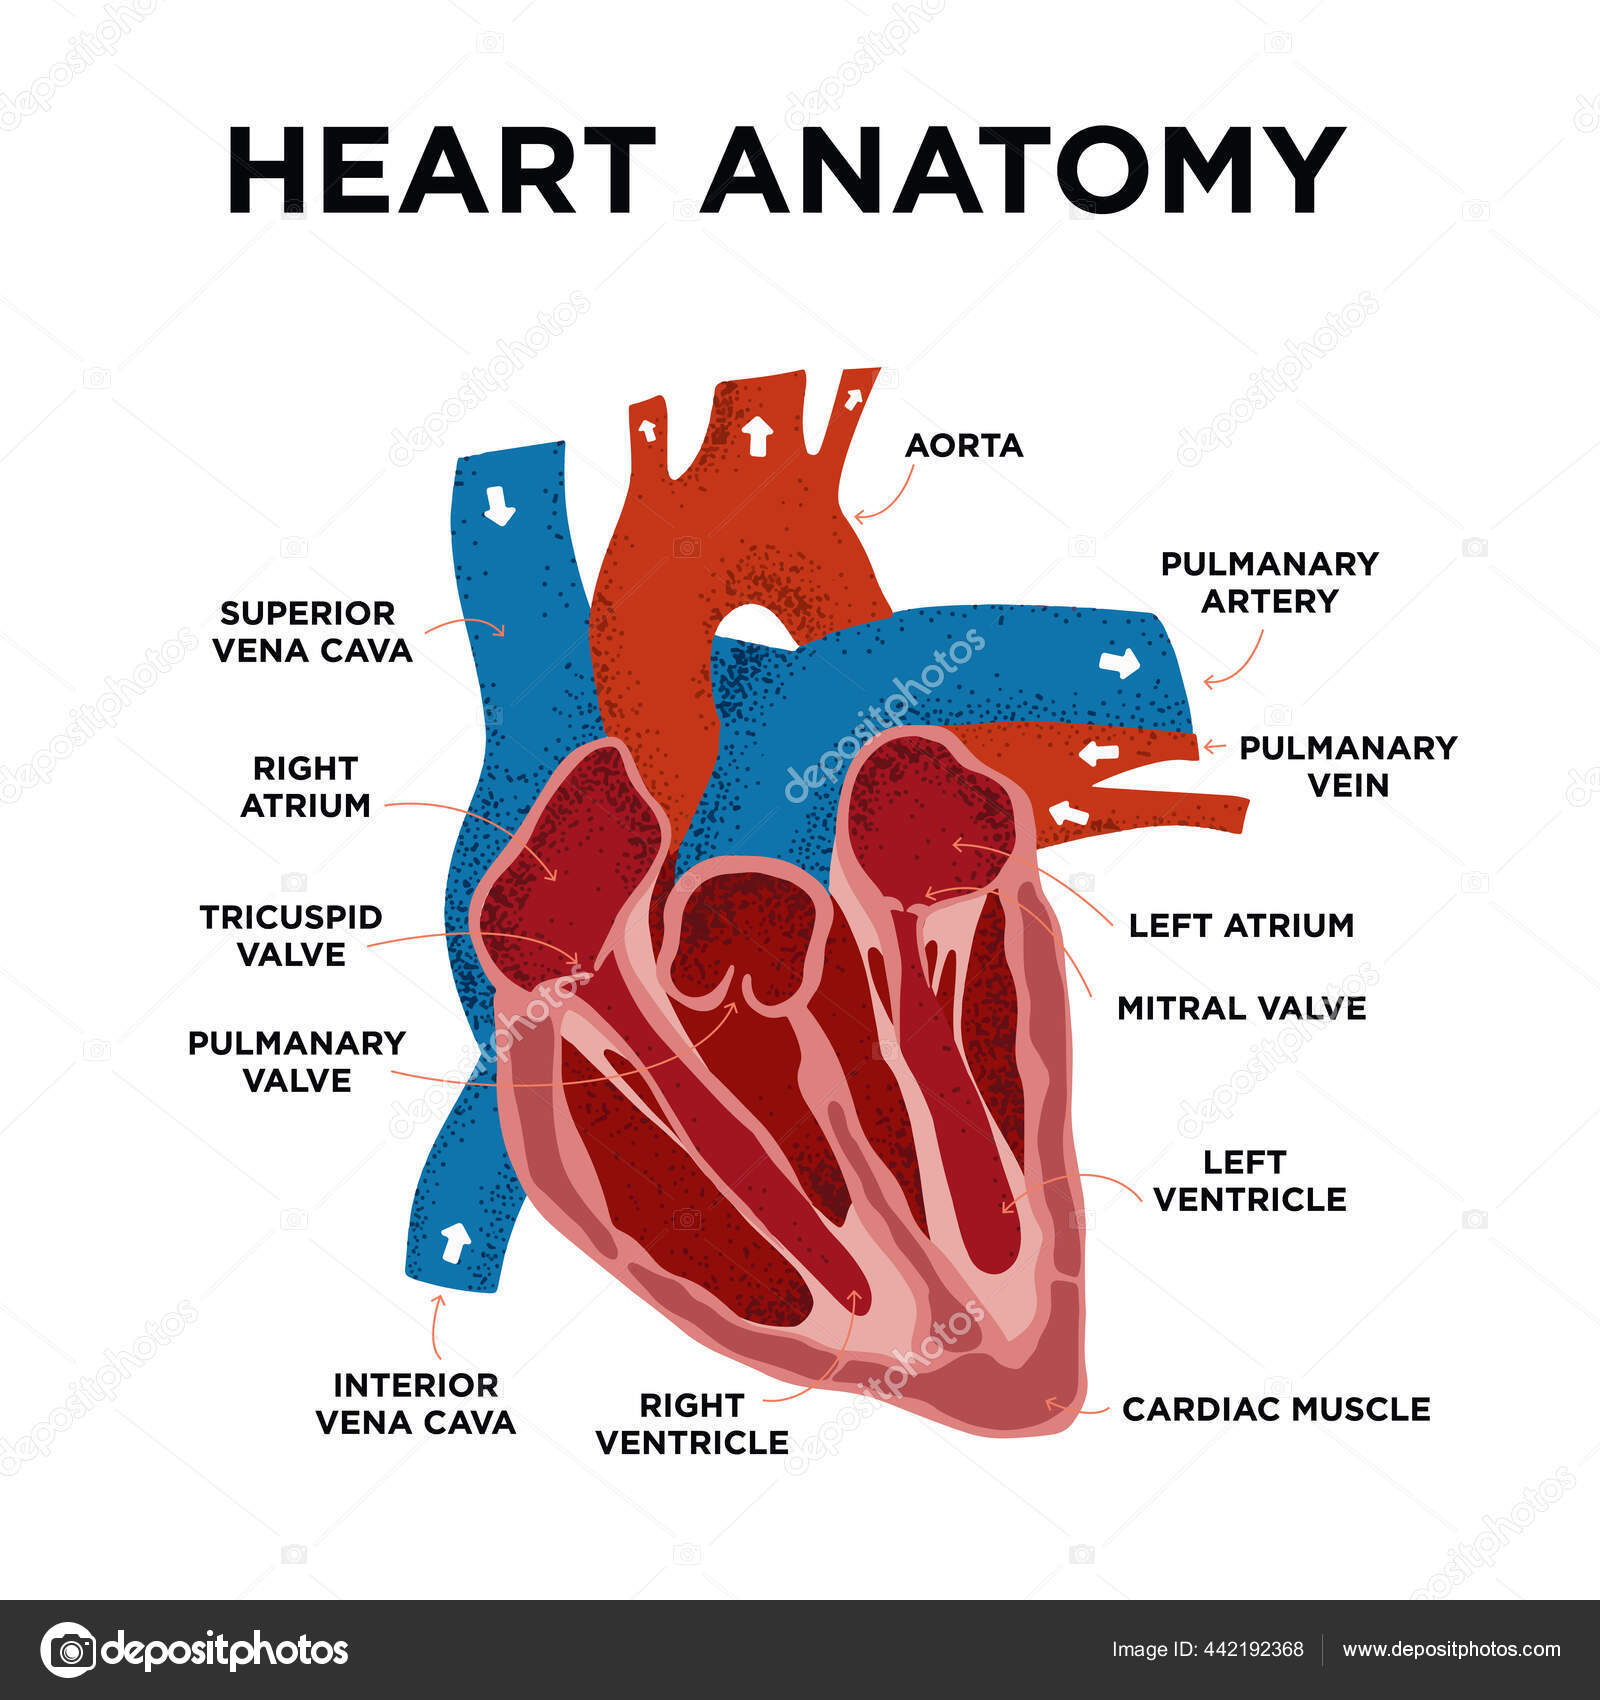 Anatomy heart Heart: illustrated